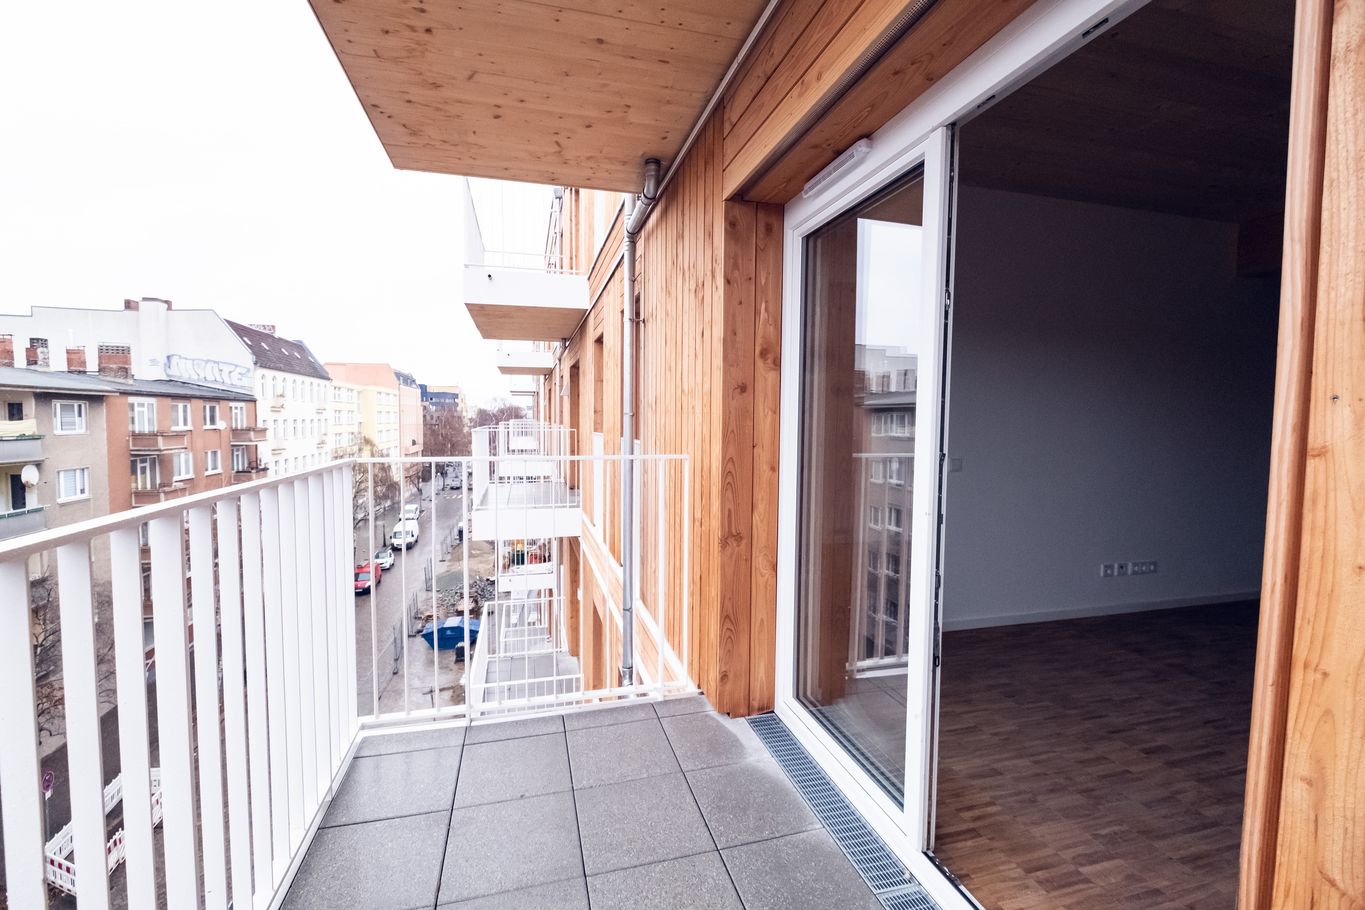 Jede Wohneinheit verfügt über einen Balkon @ binderholz